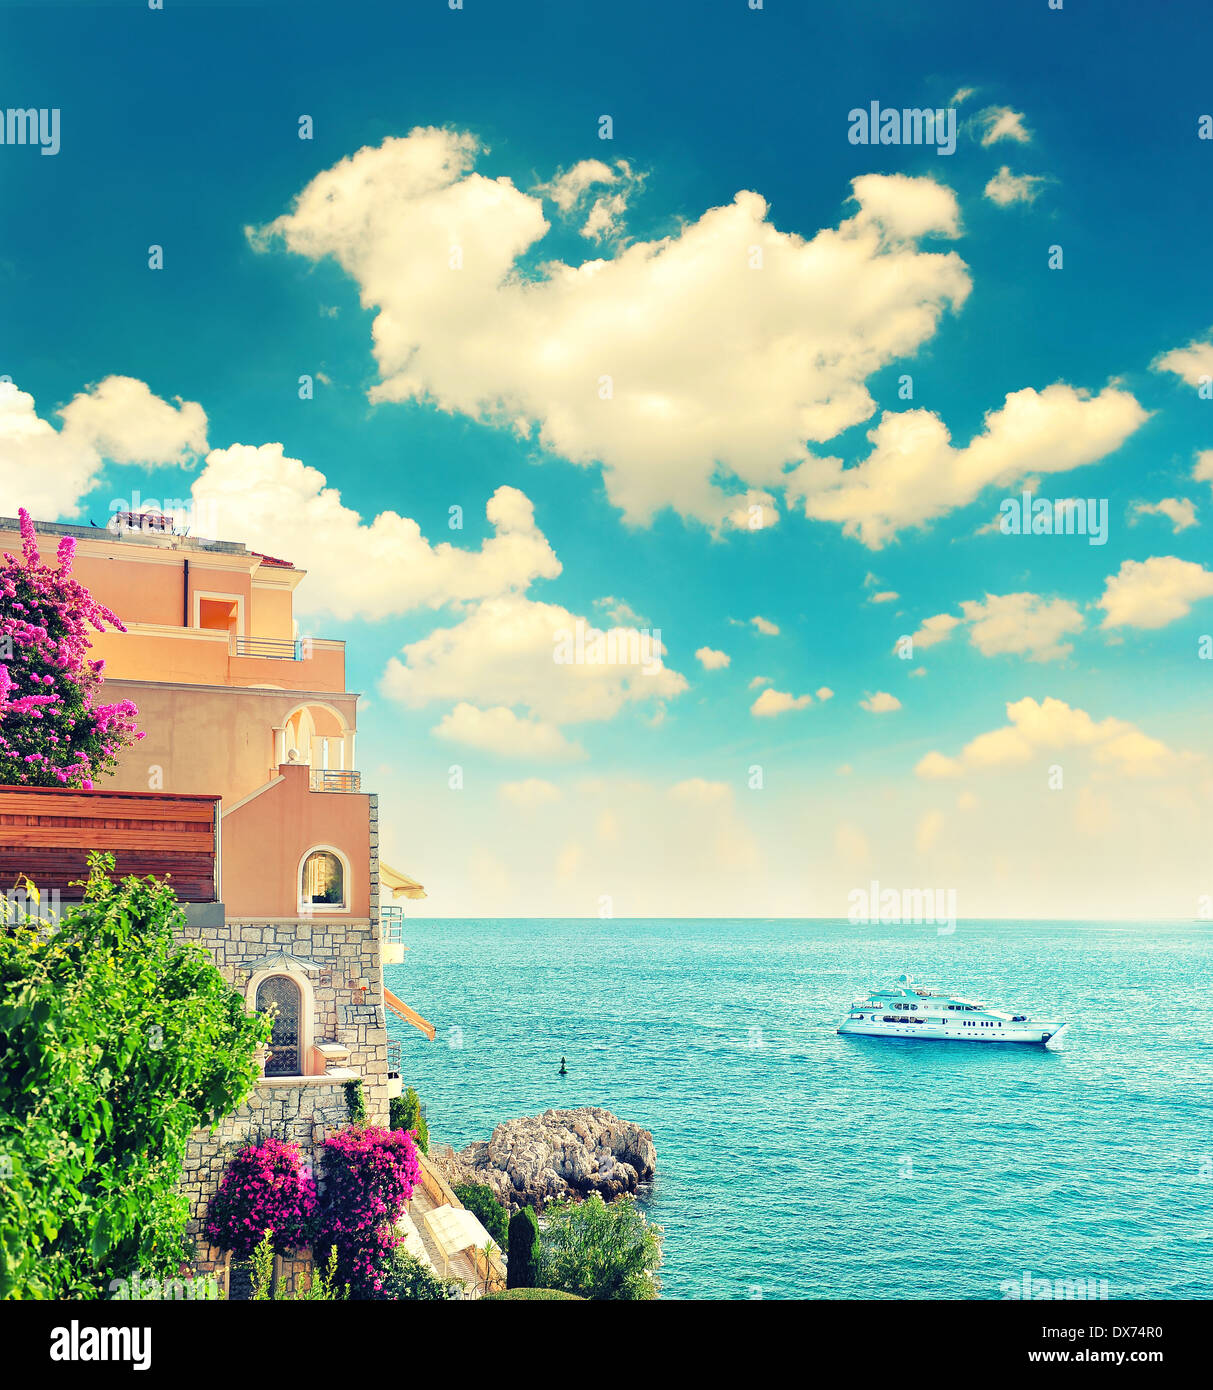 schönen mediterranen Strand Landschaft, Provence, Côte d ' Azur, Frankreich in der Nähe von Nizza und Monaco. Retro-Stil Bild Stockfoto